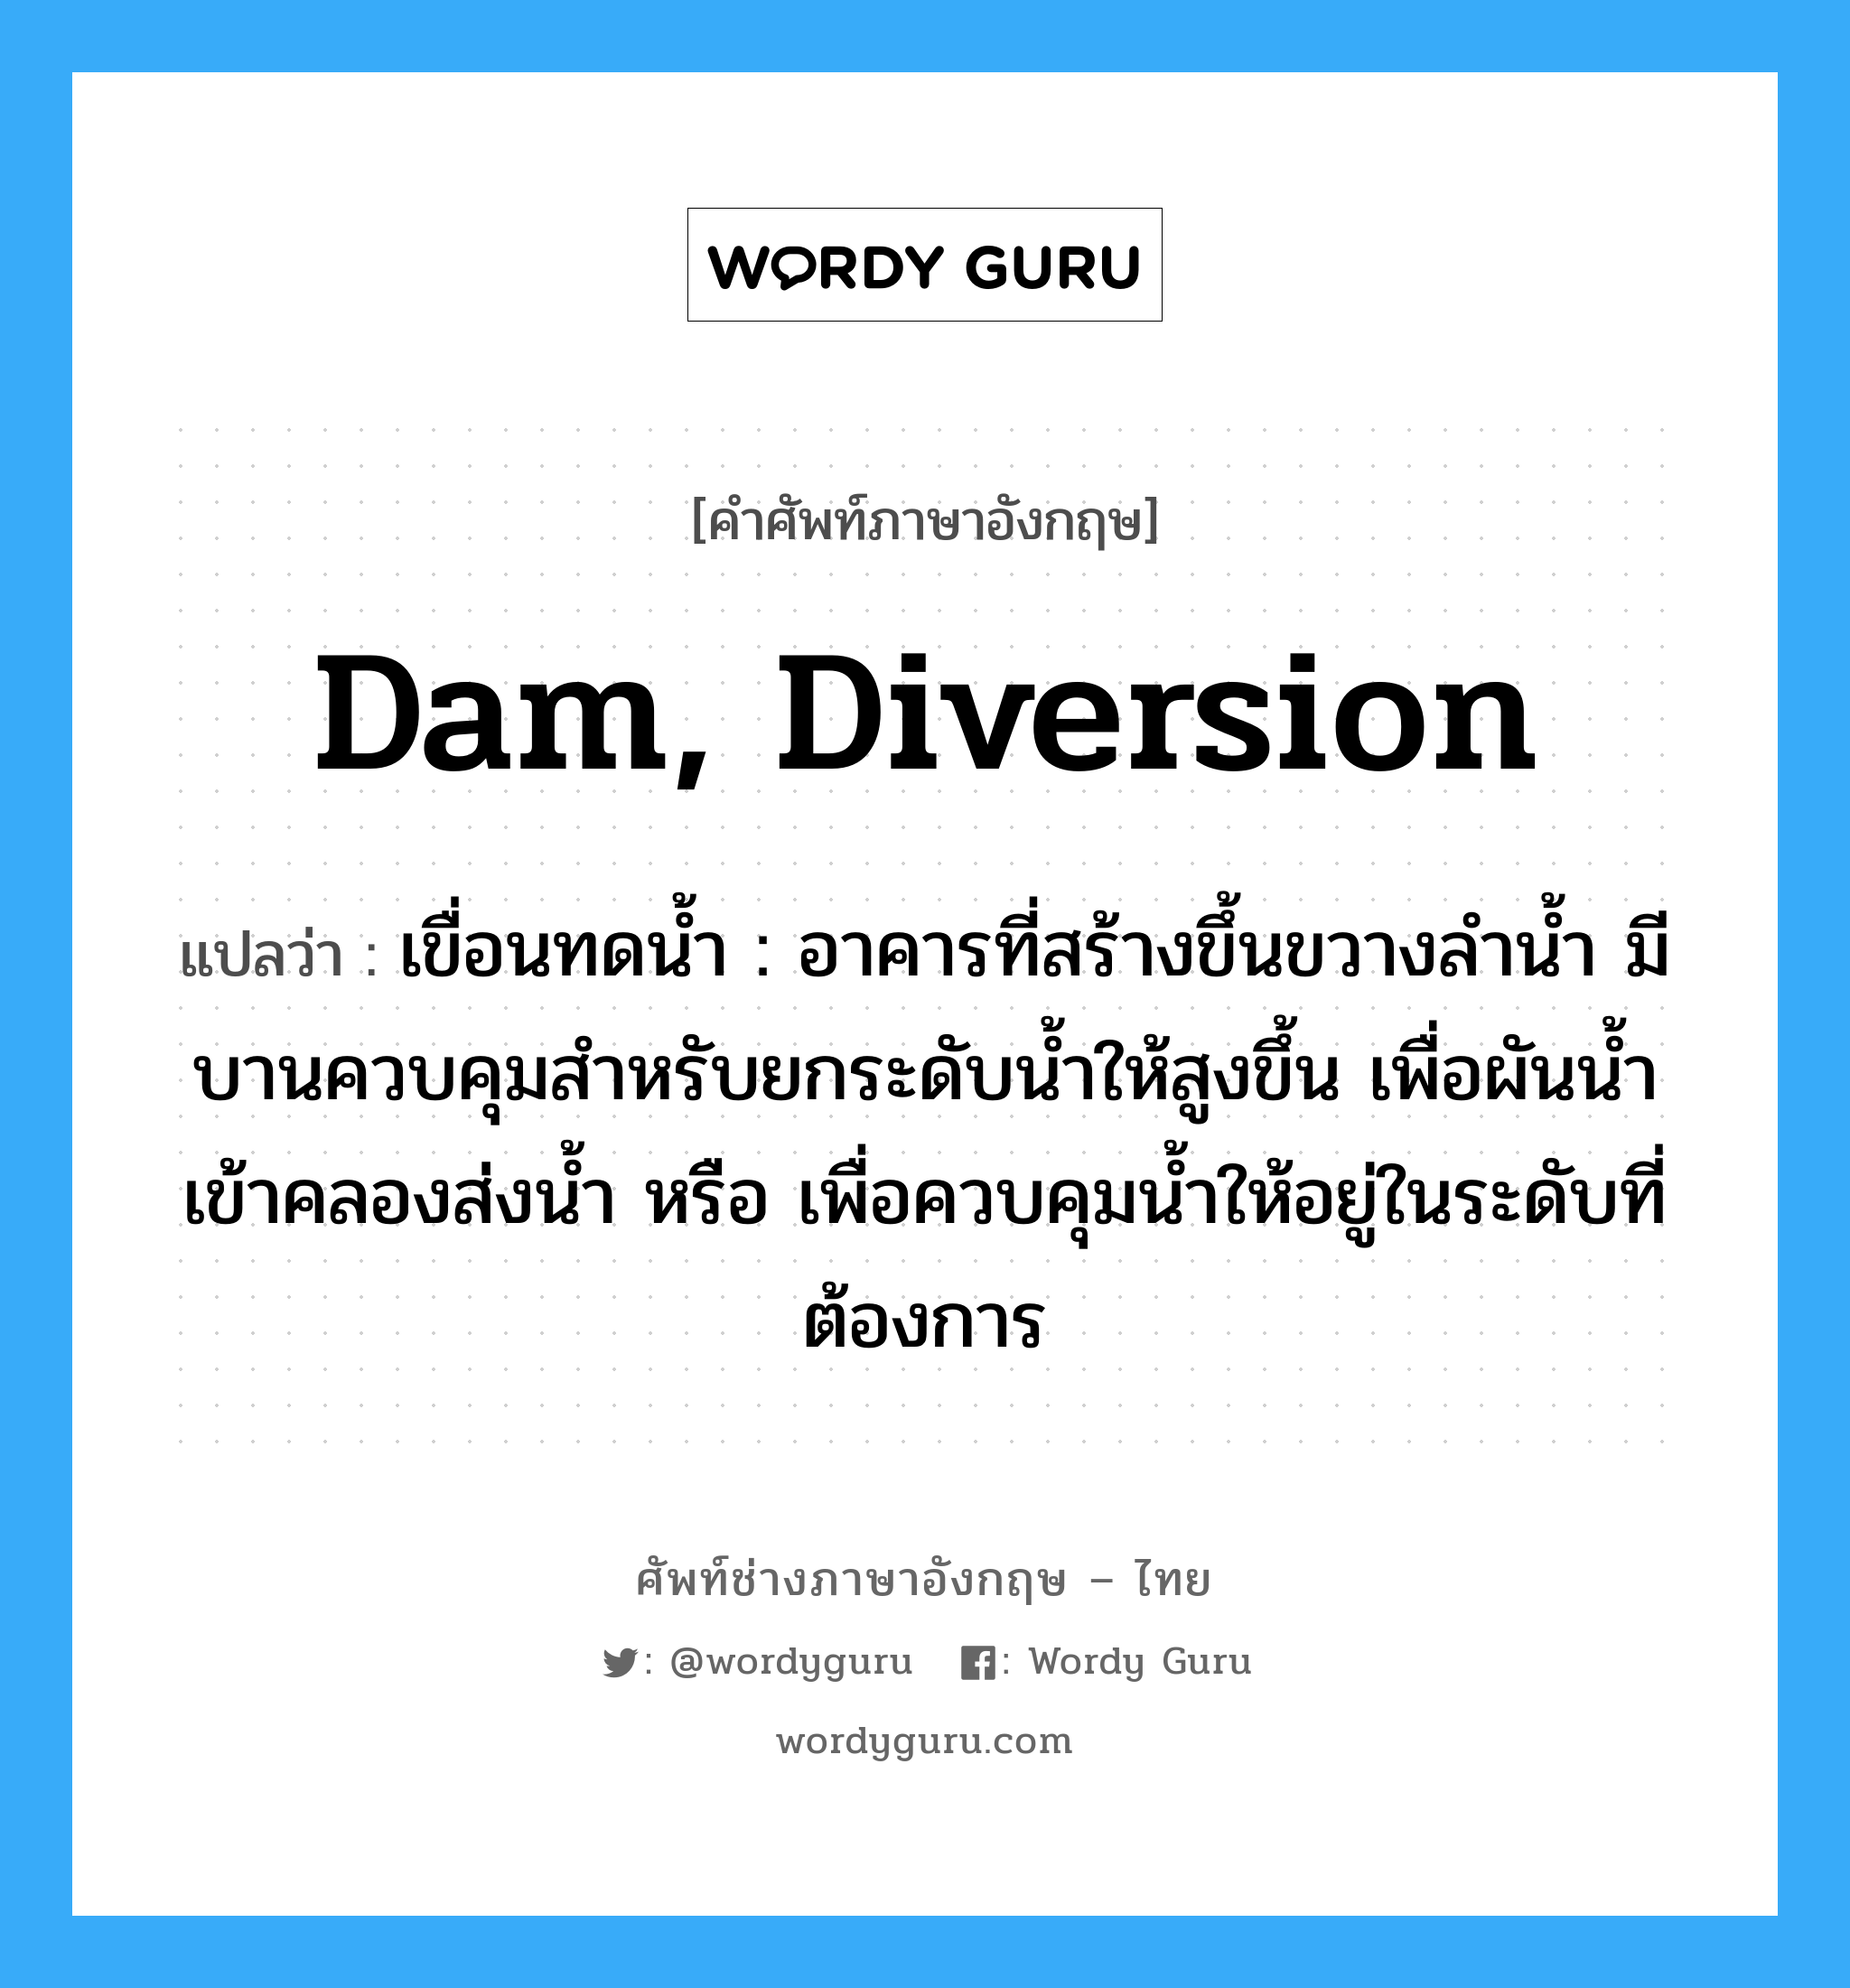 dam, diversion แปลว่า?, คำศัพท์ช่างภาษาอังกฤษ - ไทย dam, diversion คำศัพท์ภาษาอังกฤษ dam, diversion แปลว่า เขื่อนทดน้ำ : อาคารที่สร้างขึ้นขวางลำน้ำ มีบานควบคุมสำหรับยกระดับน้ำให้สูงขึ้น เพื่อผันน้ำเข้าคลองส่งน้ำ หรือ เพื่อควบคุมน้ำให้อยู่ในระดับที่ต้องการ